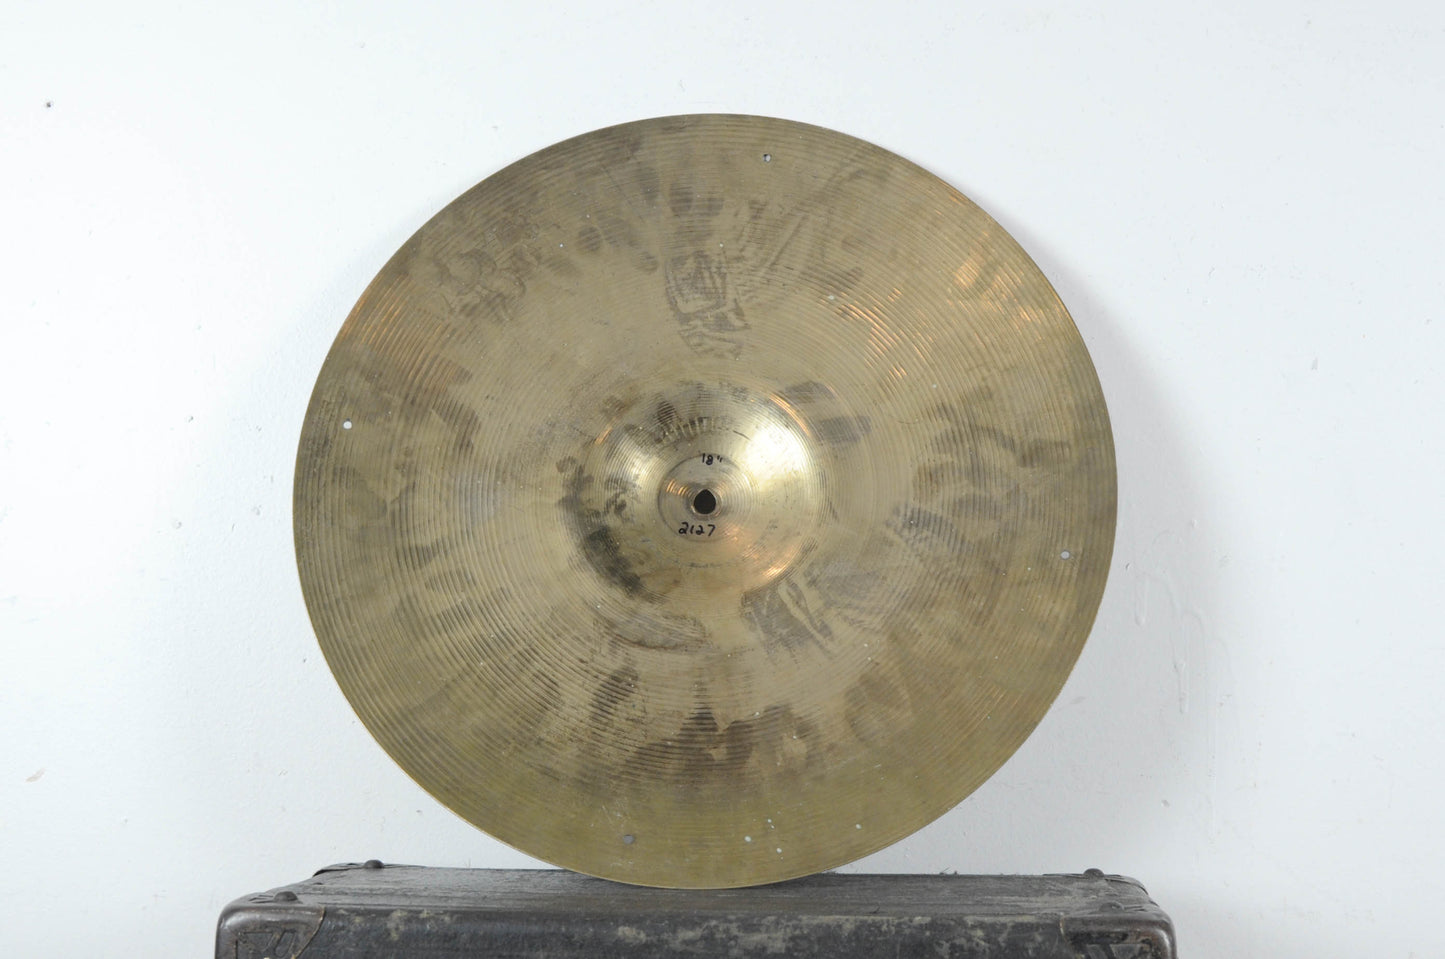 1960s Zildjian A 18" Ride Cymbal 2127g